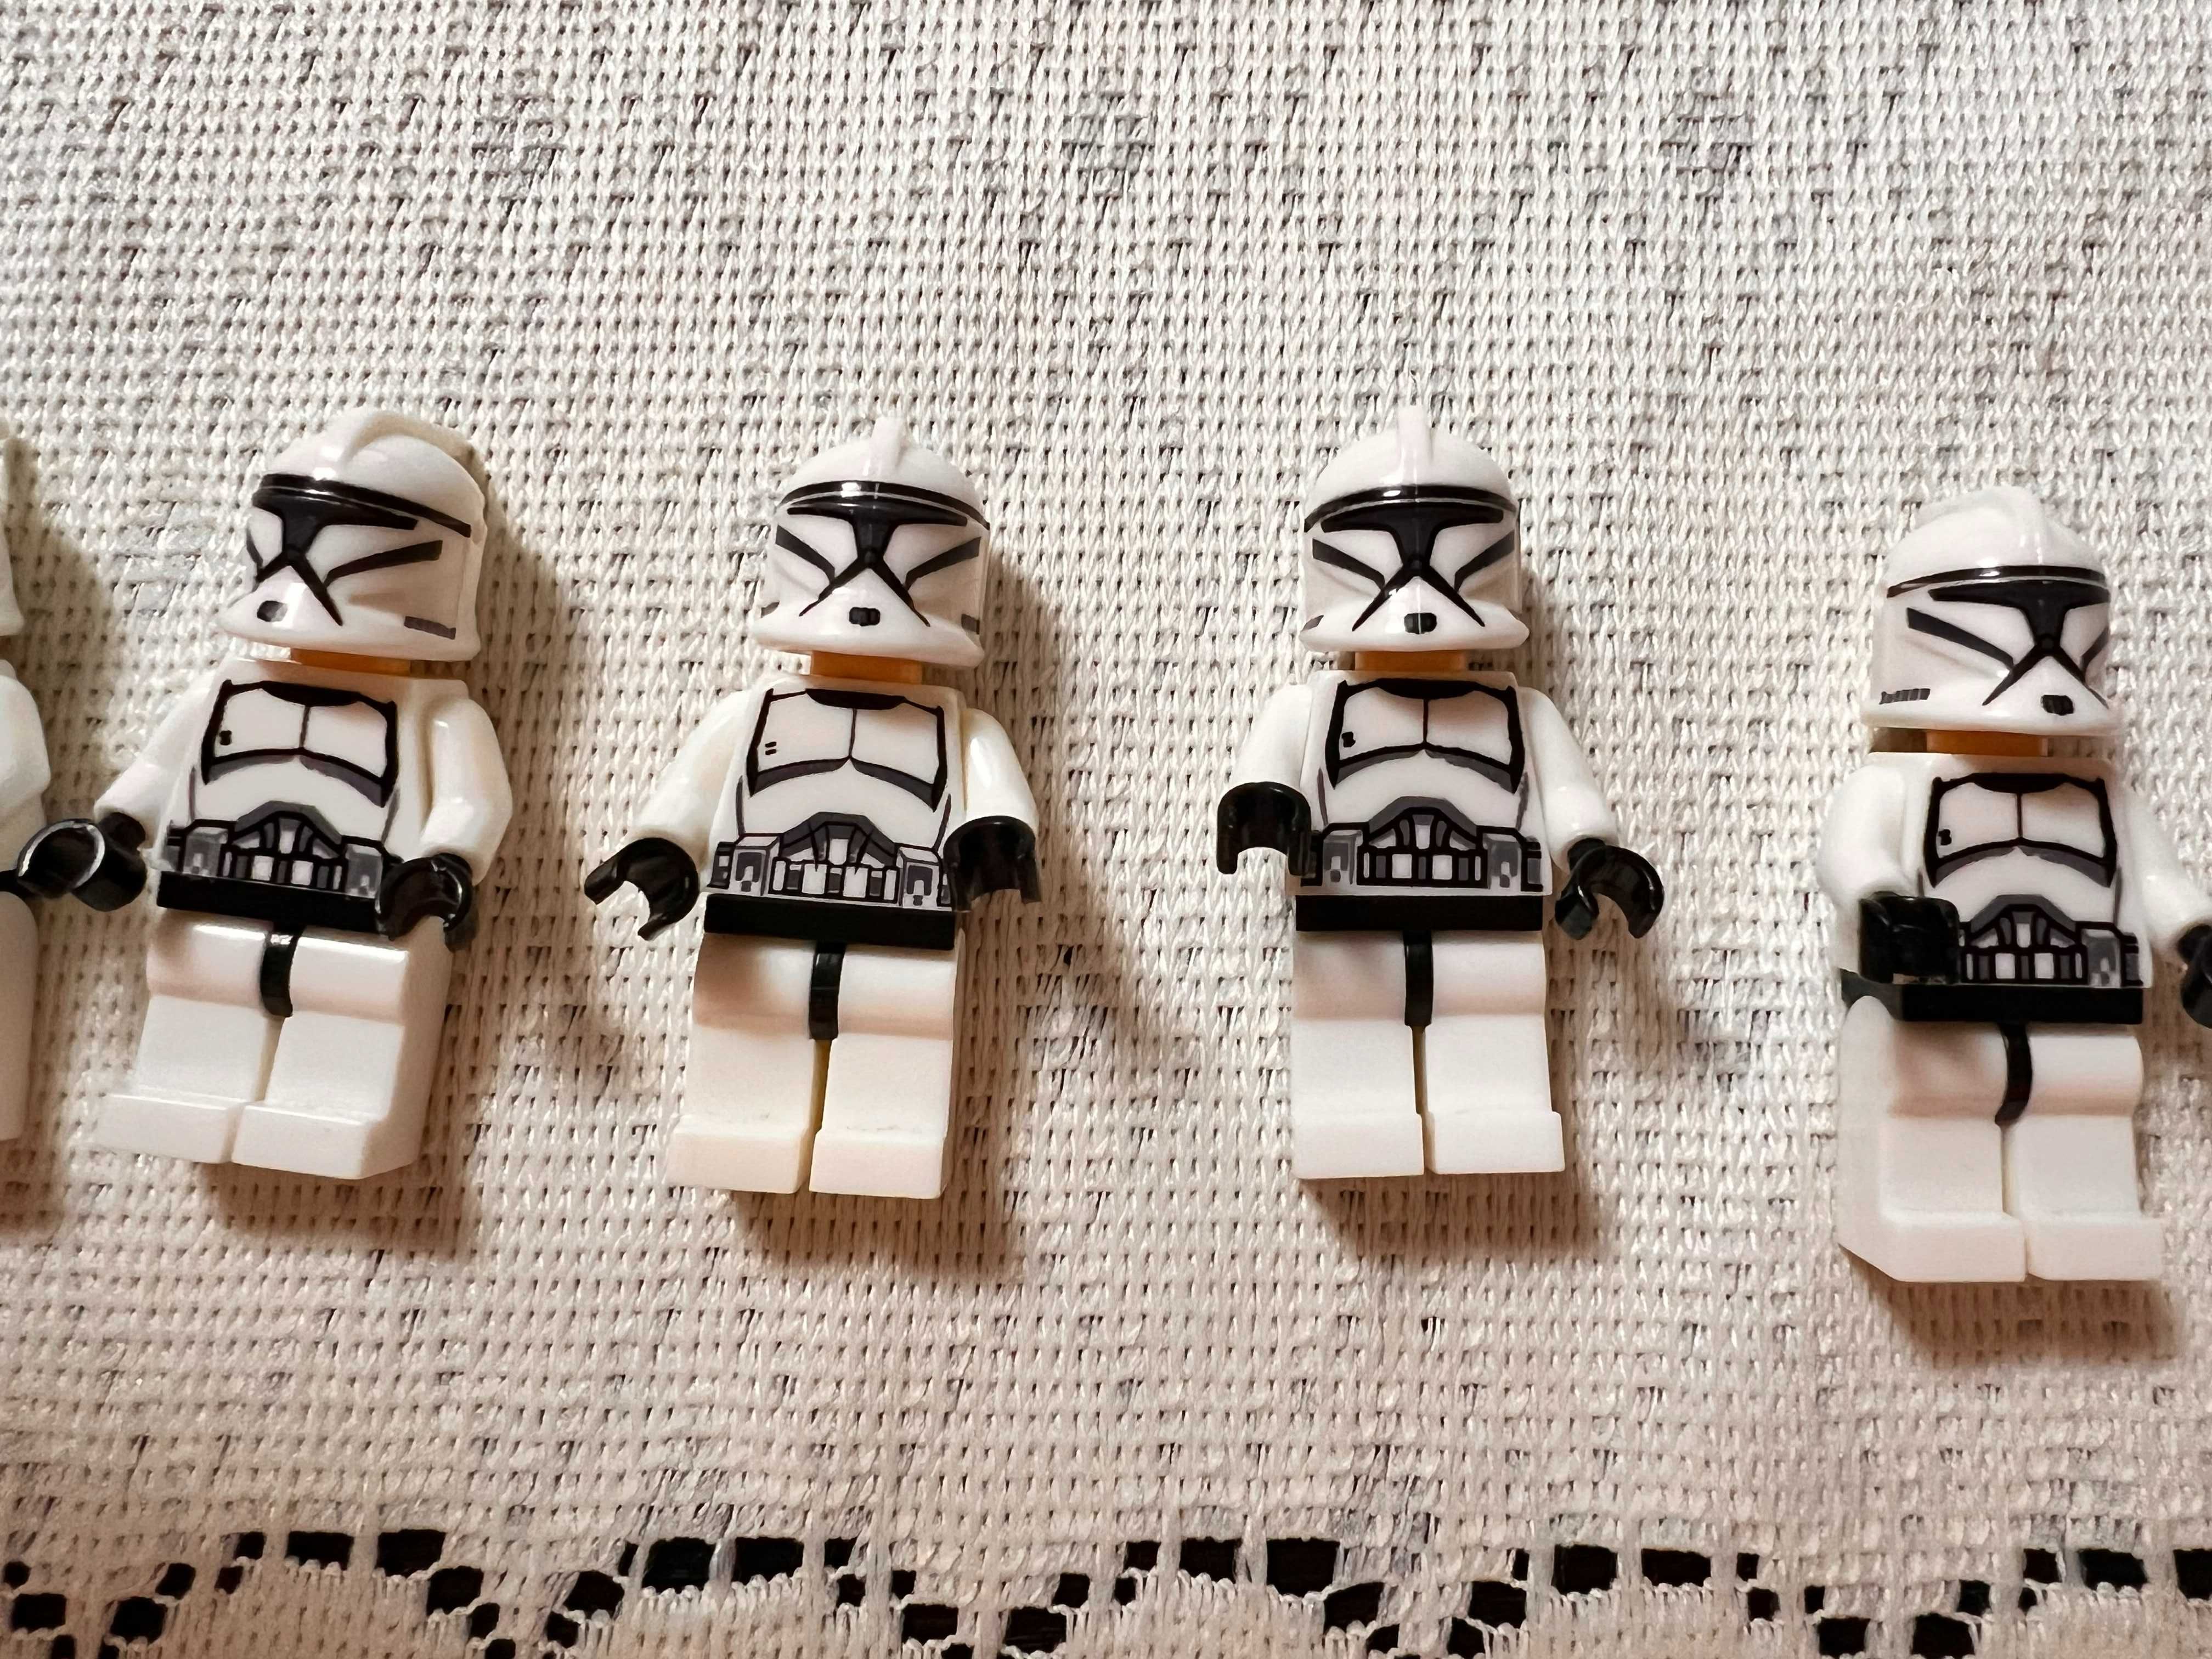 Figurki Star Wars jak Lego zestaw nr 3